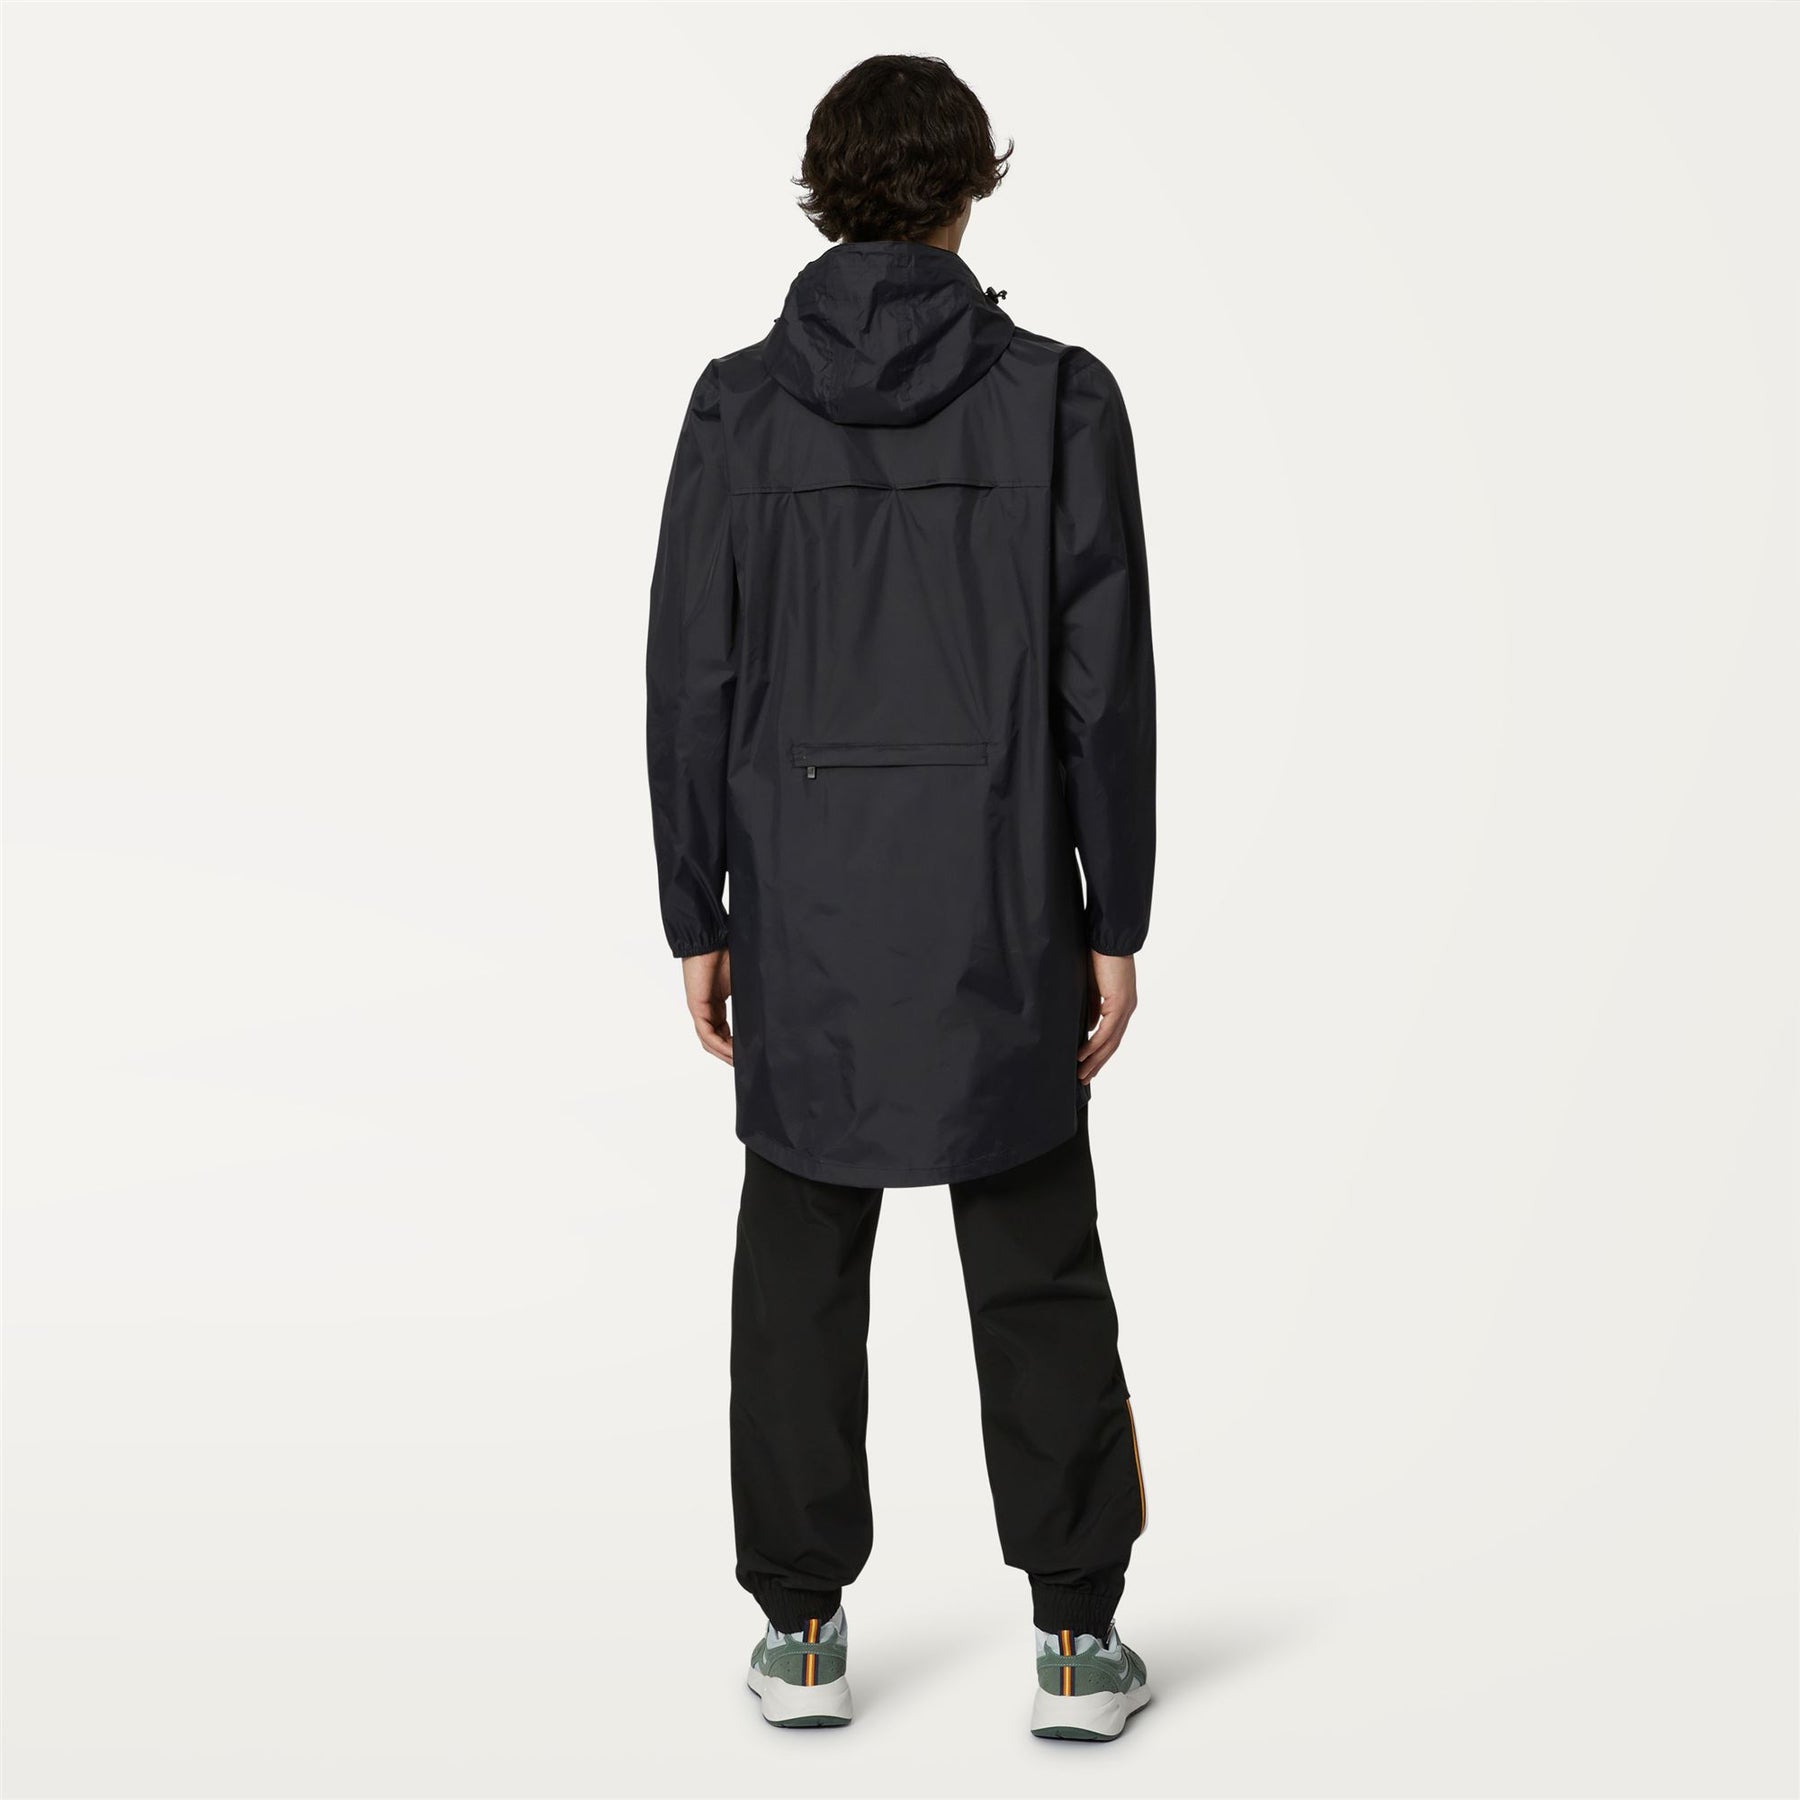 Eiffel - Unisex Waterproof Packable Long Rain Jacket in Black Pure